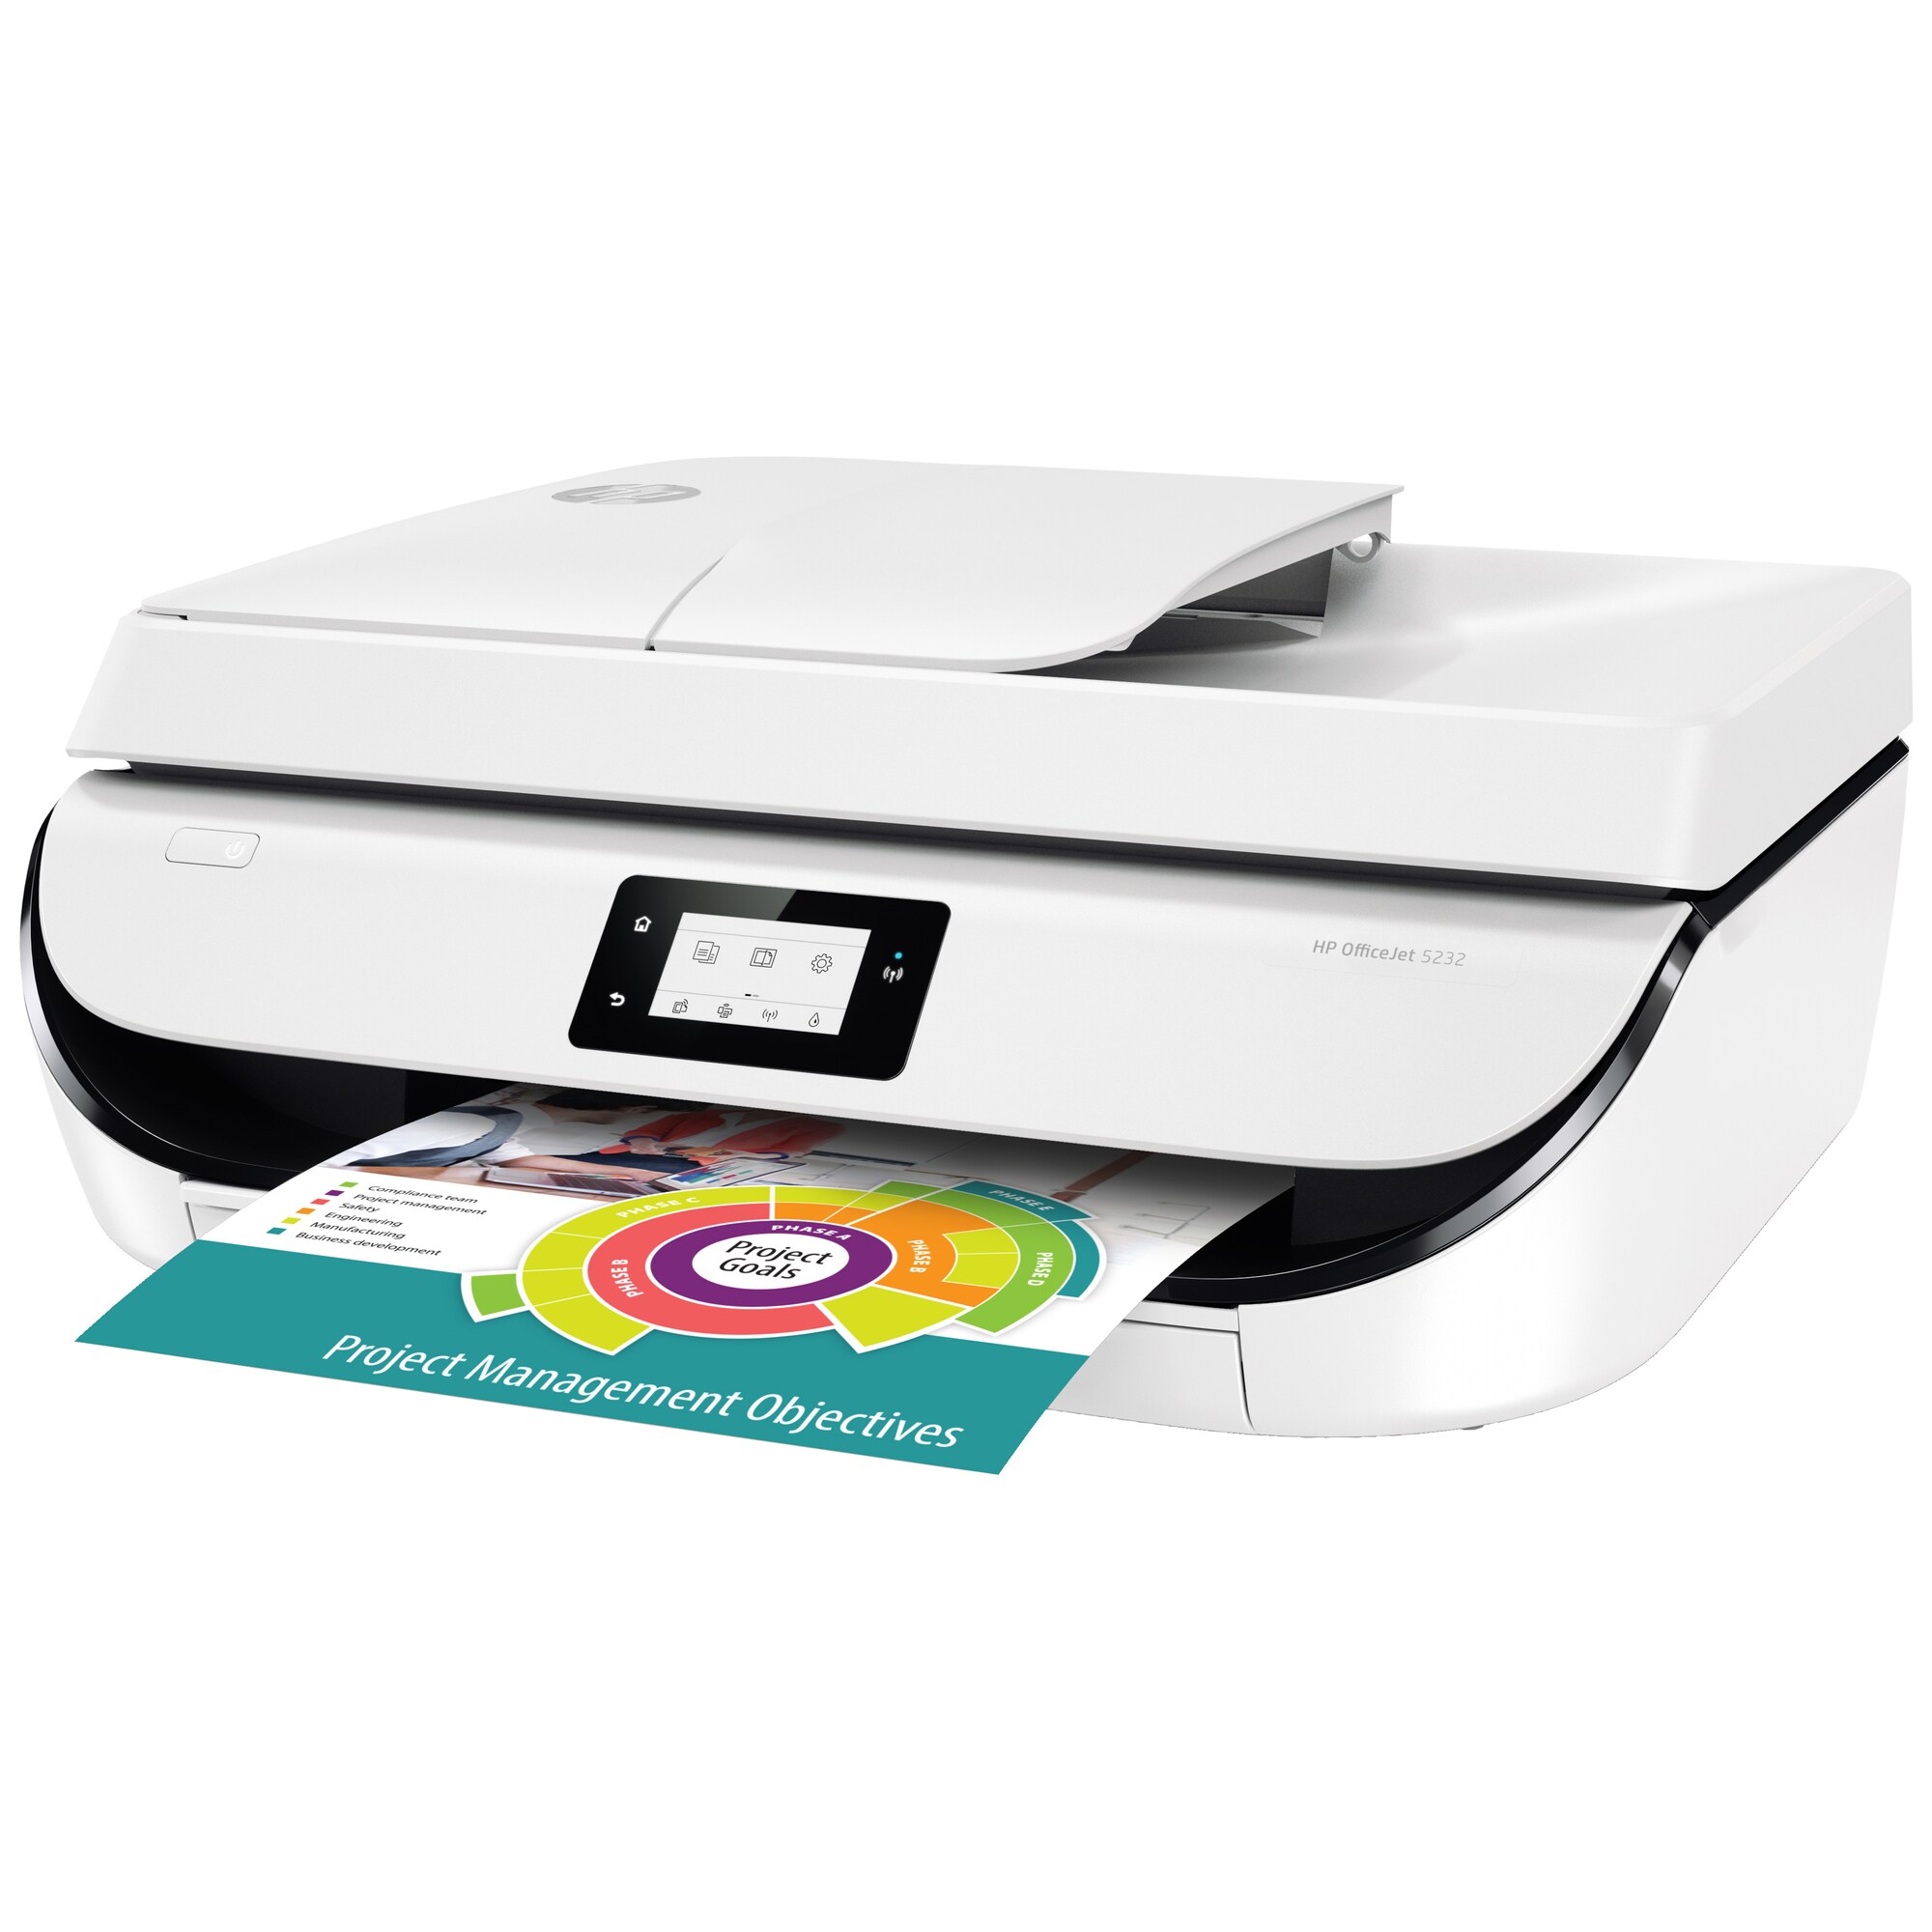 Min Strøm krybdyr HP OfficeJet 5232 AIO inkjet farveprinter (hvid) | Elgiganten